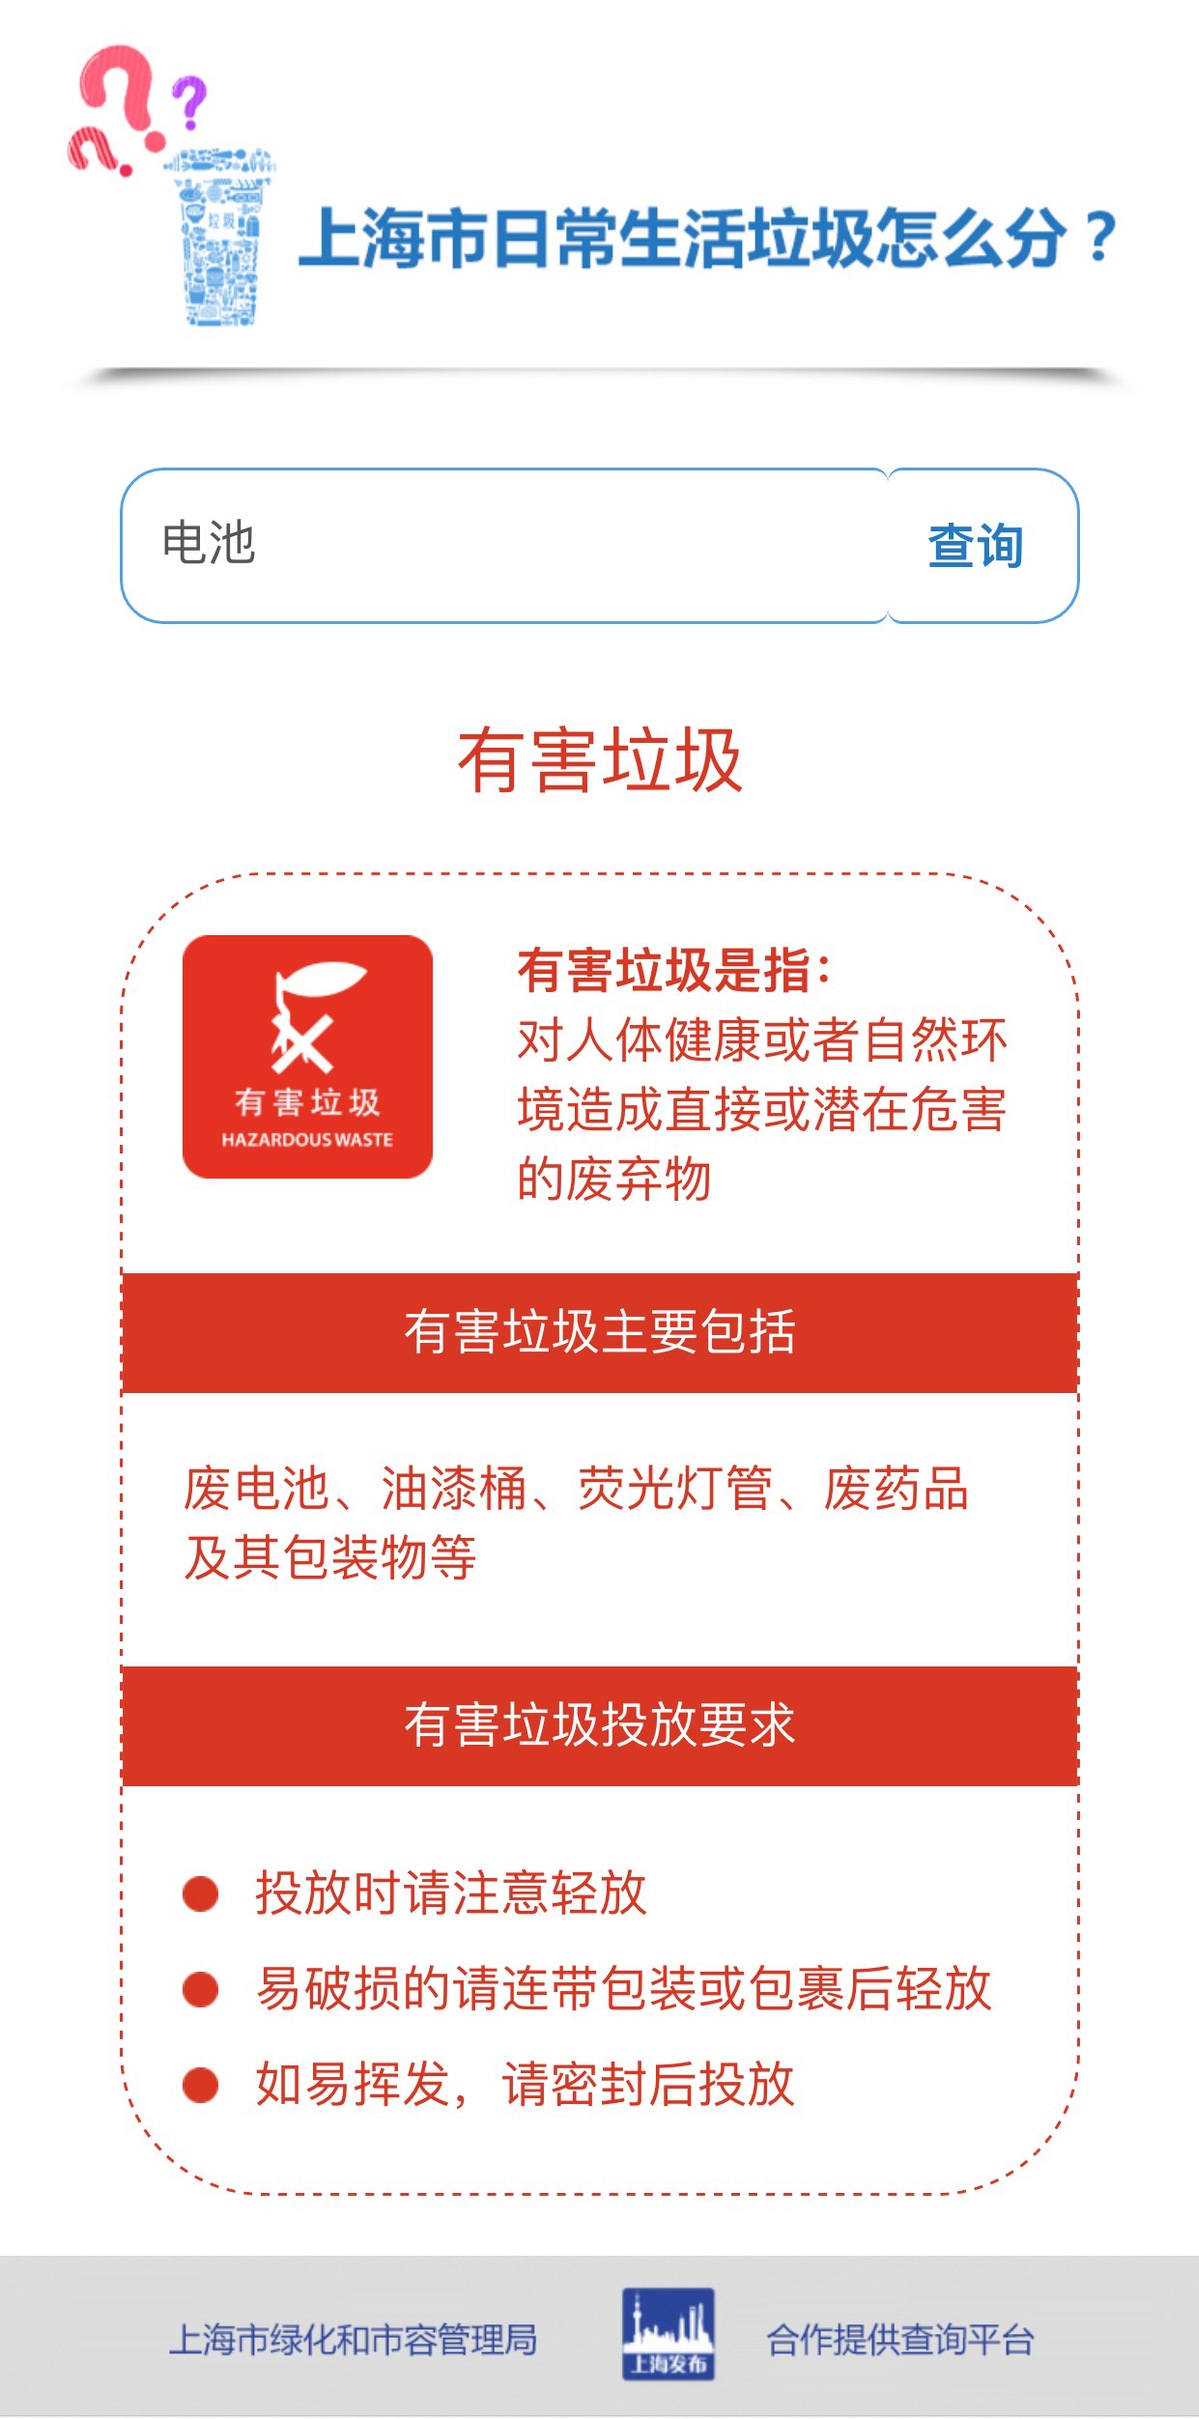 通过@绿色中国 垃圾分类查询平台检索查询